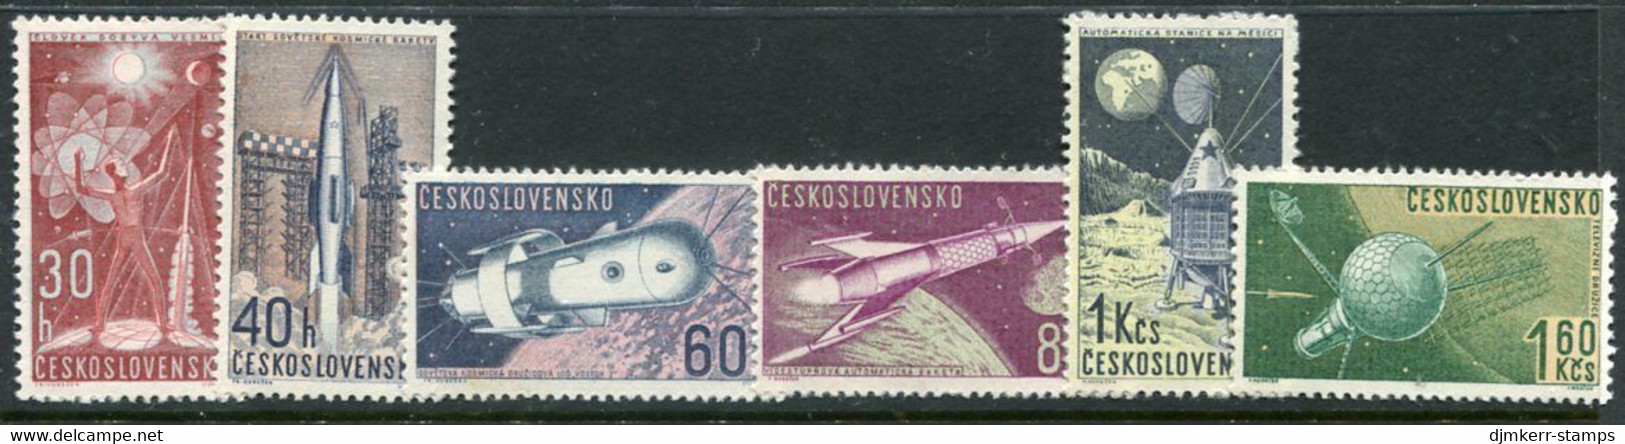 CZECHOSLOVAKIA 1962 Space Exploration MNH / **.  Michel 1329-34 - Nuovi